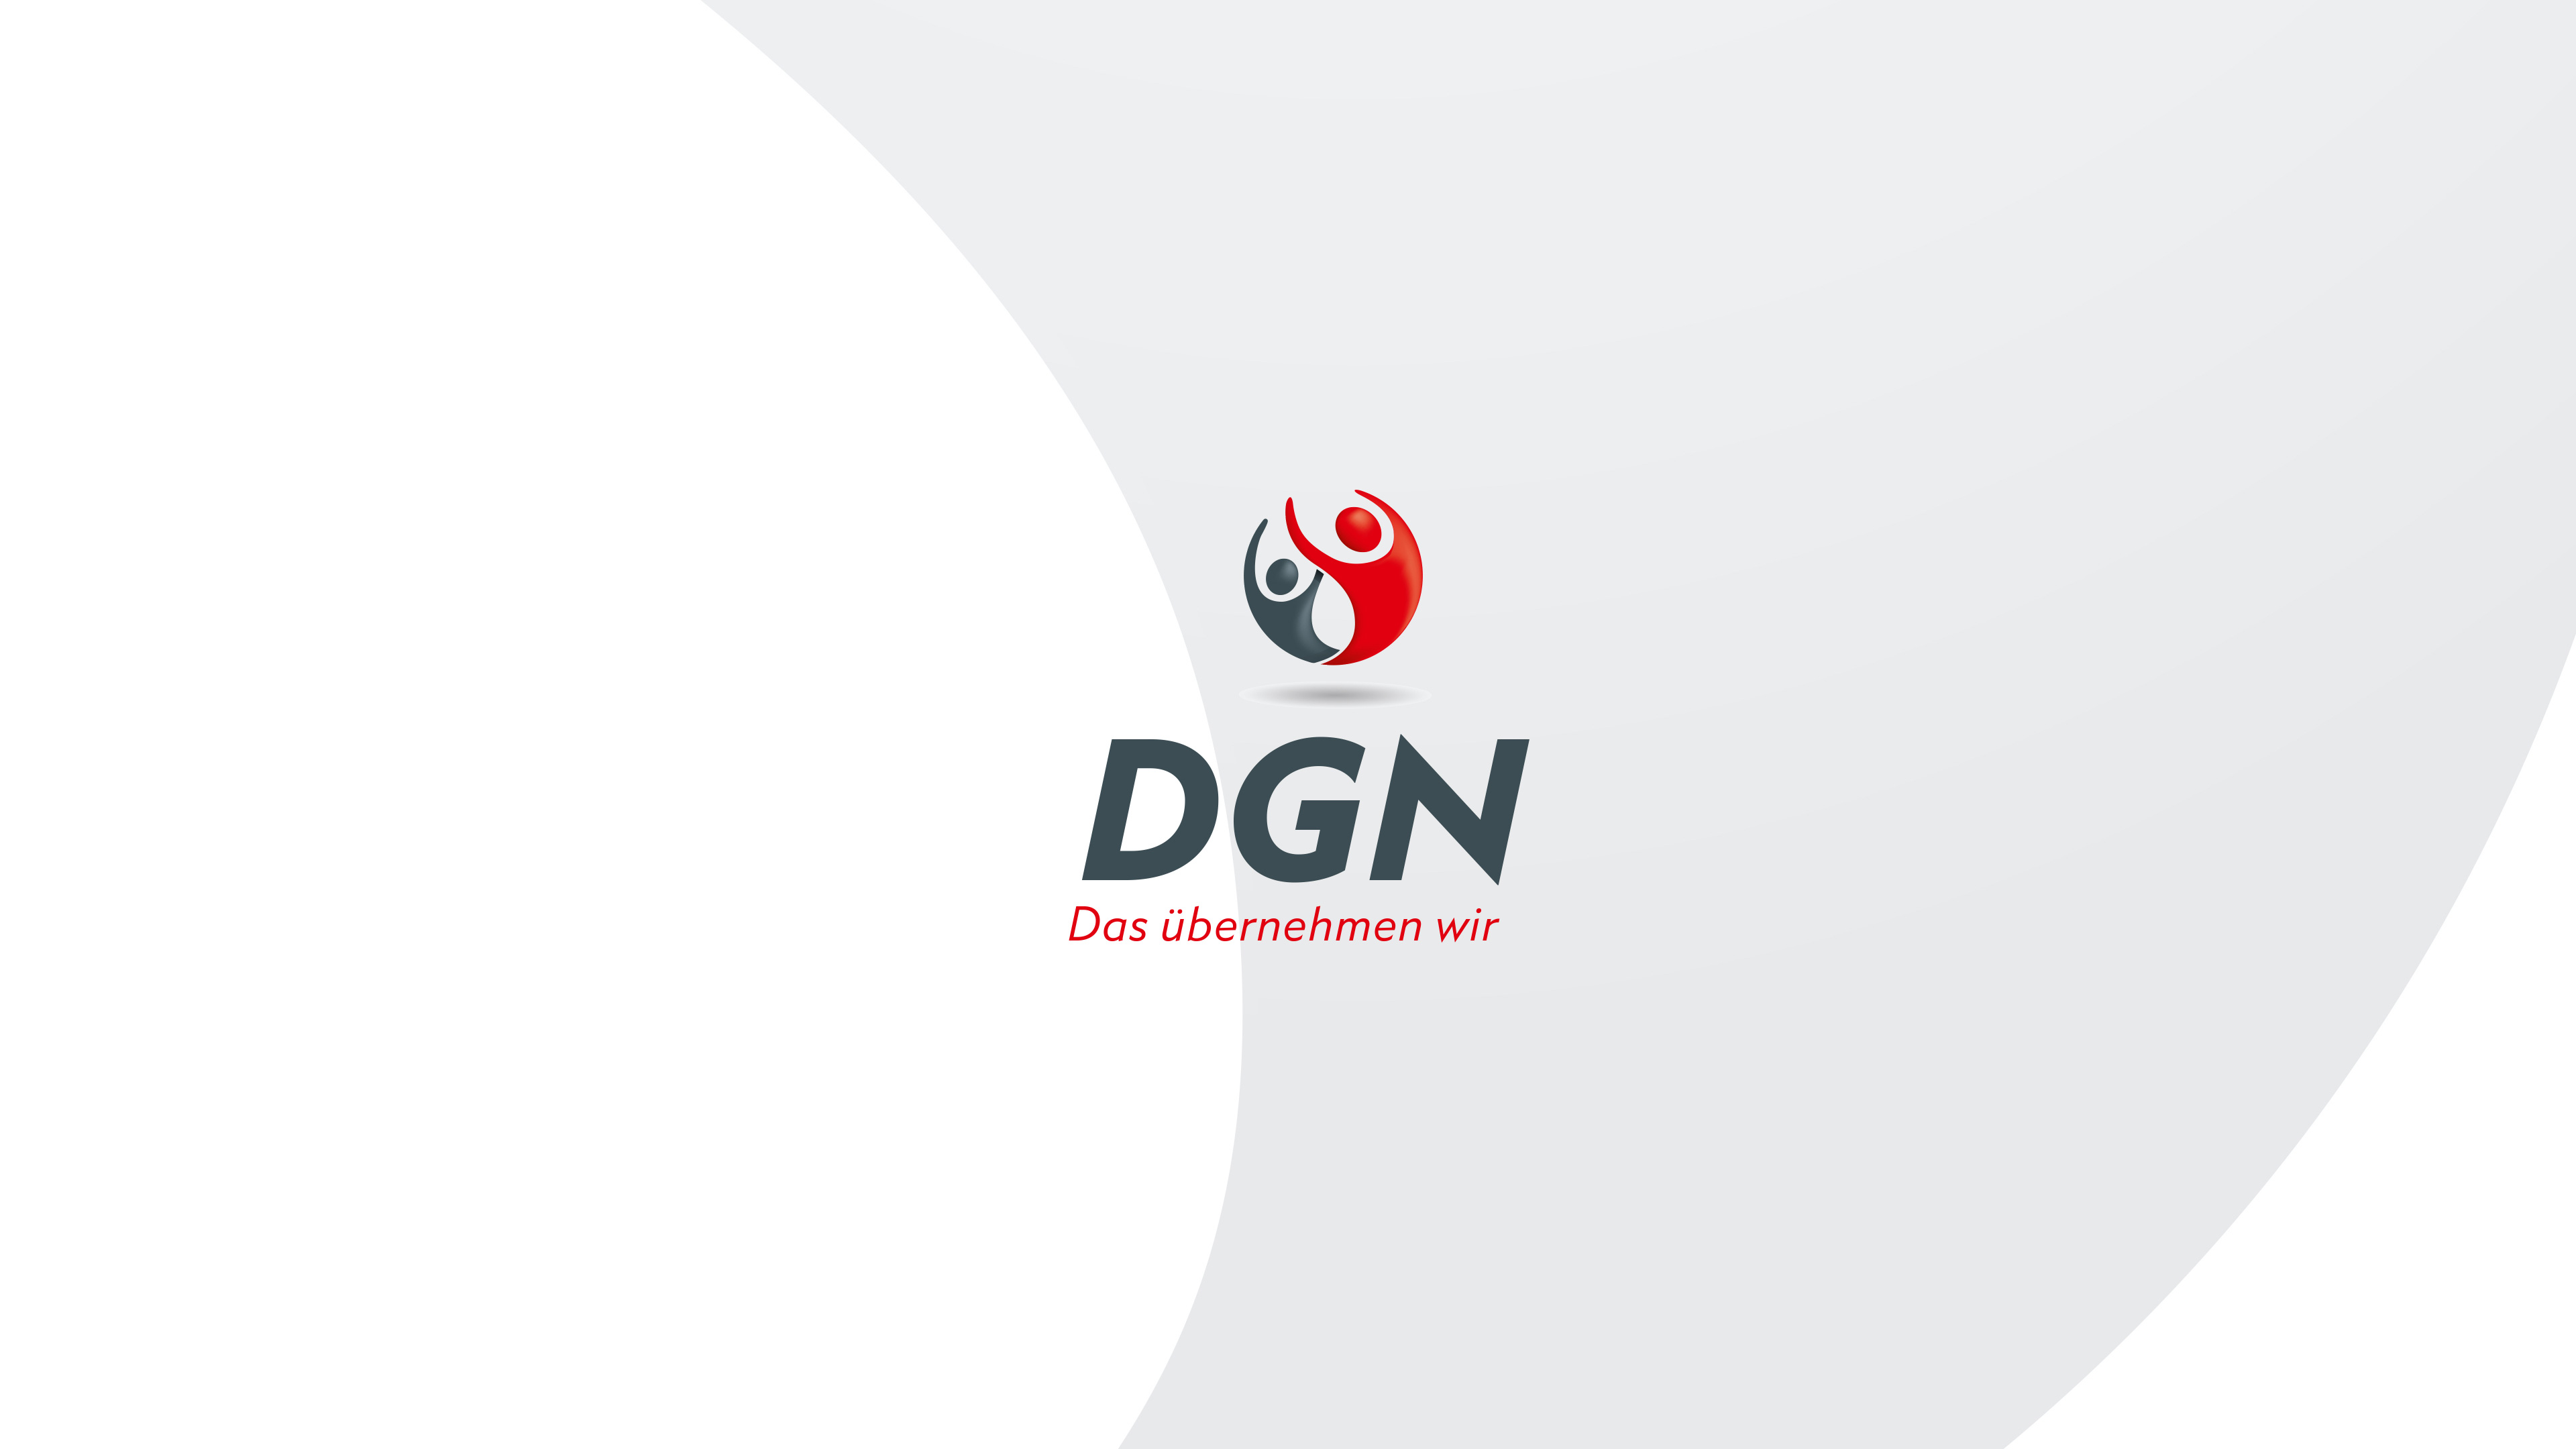 Logo von DGN mit Schriftzug "Das übernehmen wir" und zwei Silhouetten in Grau und Rot